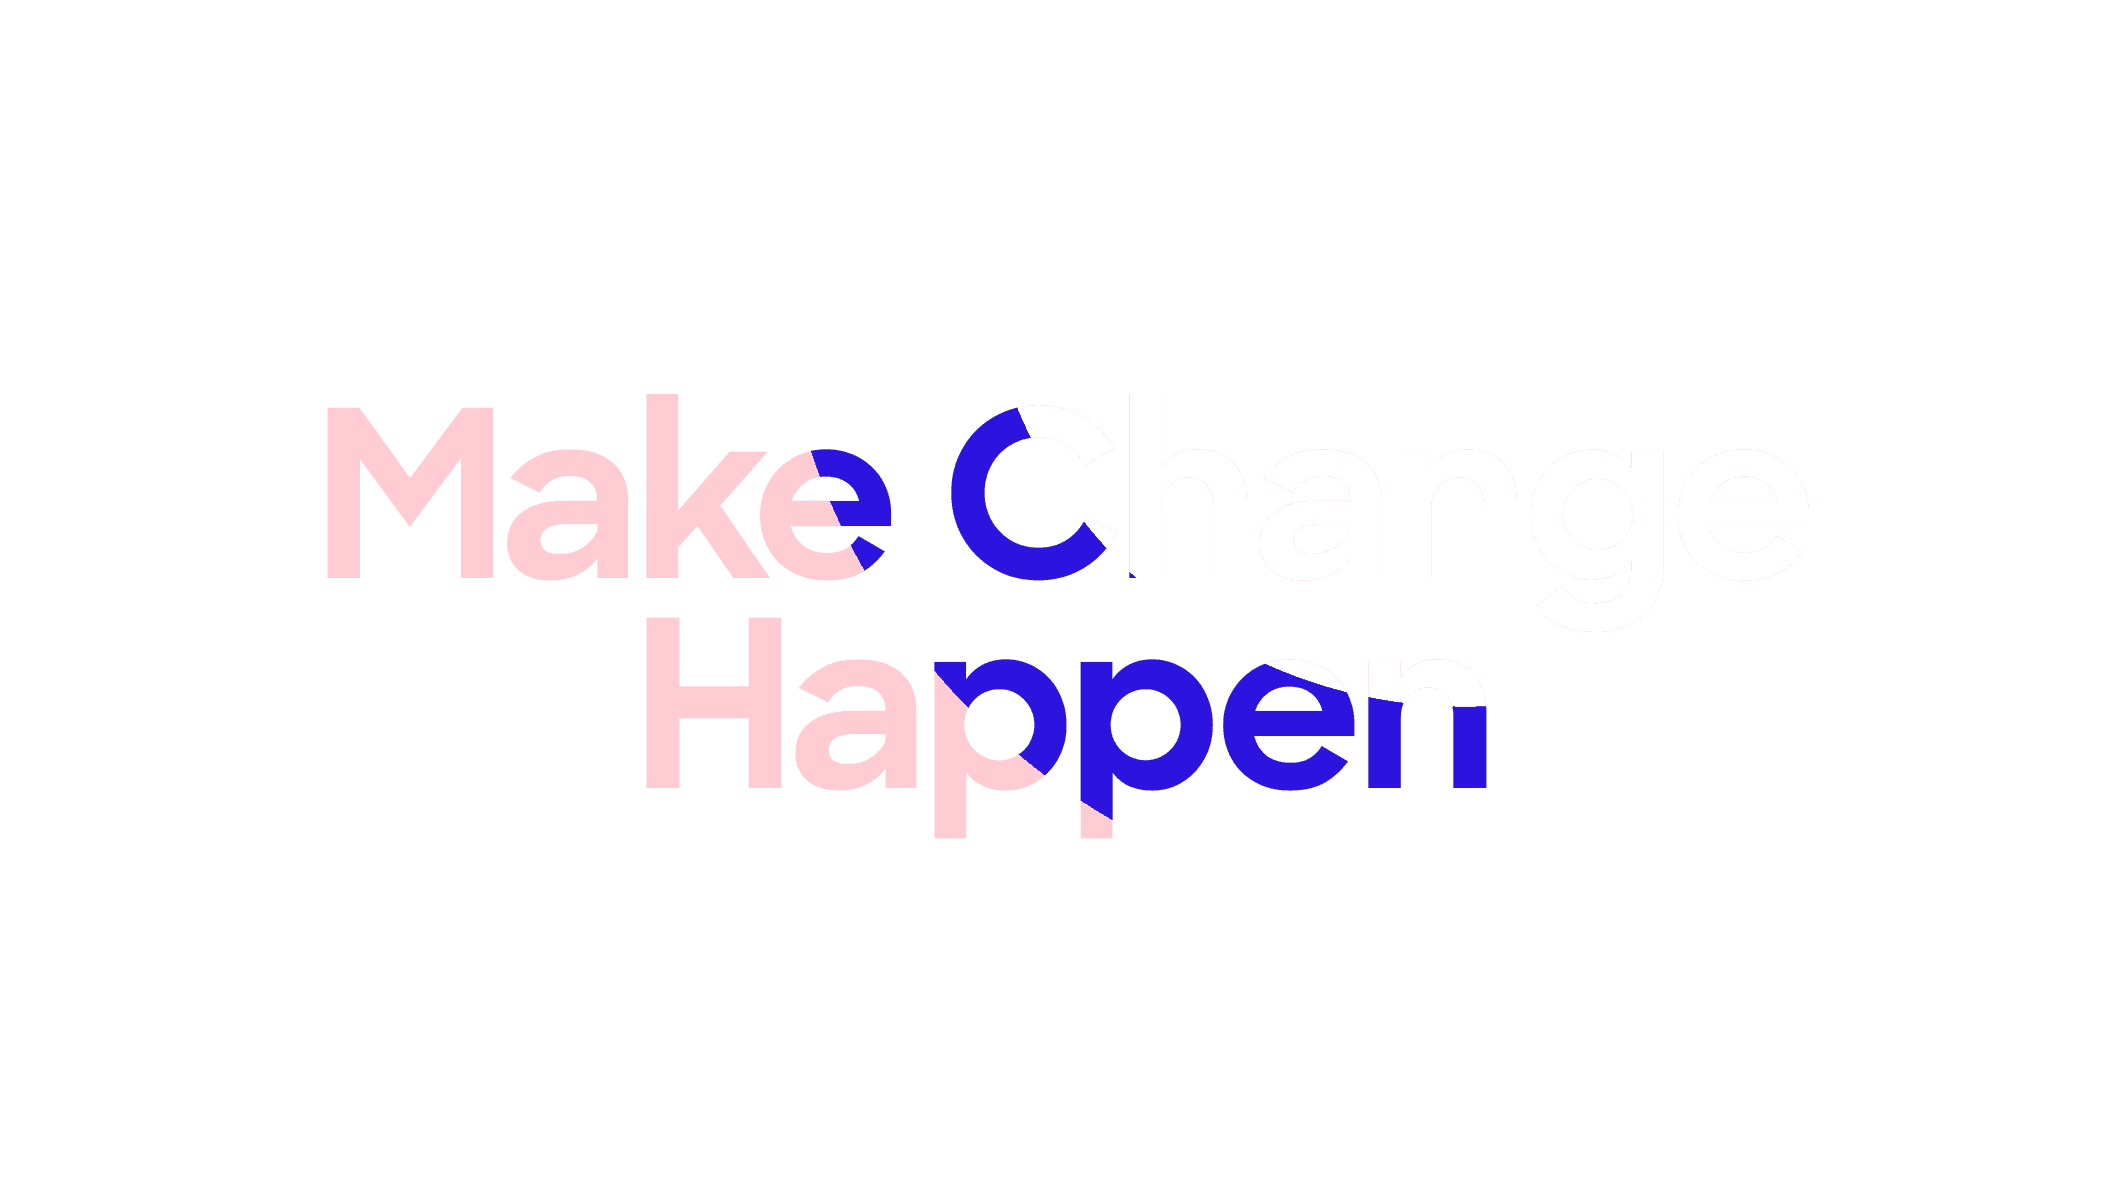 Make change happen